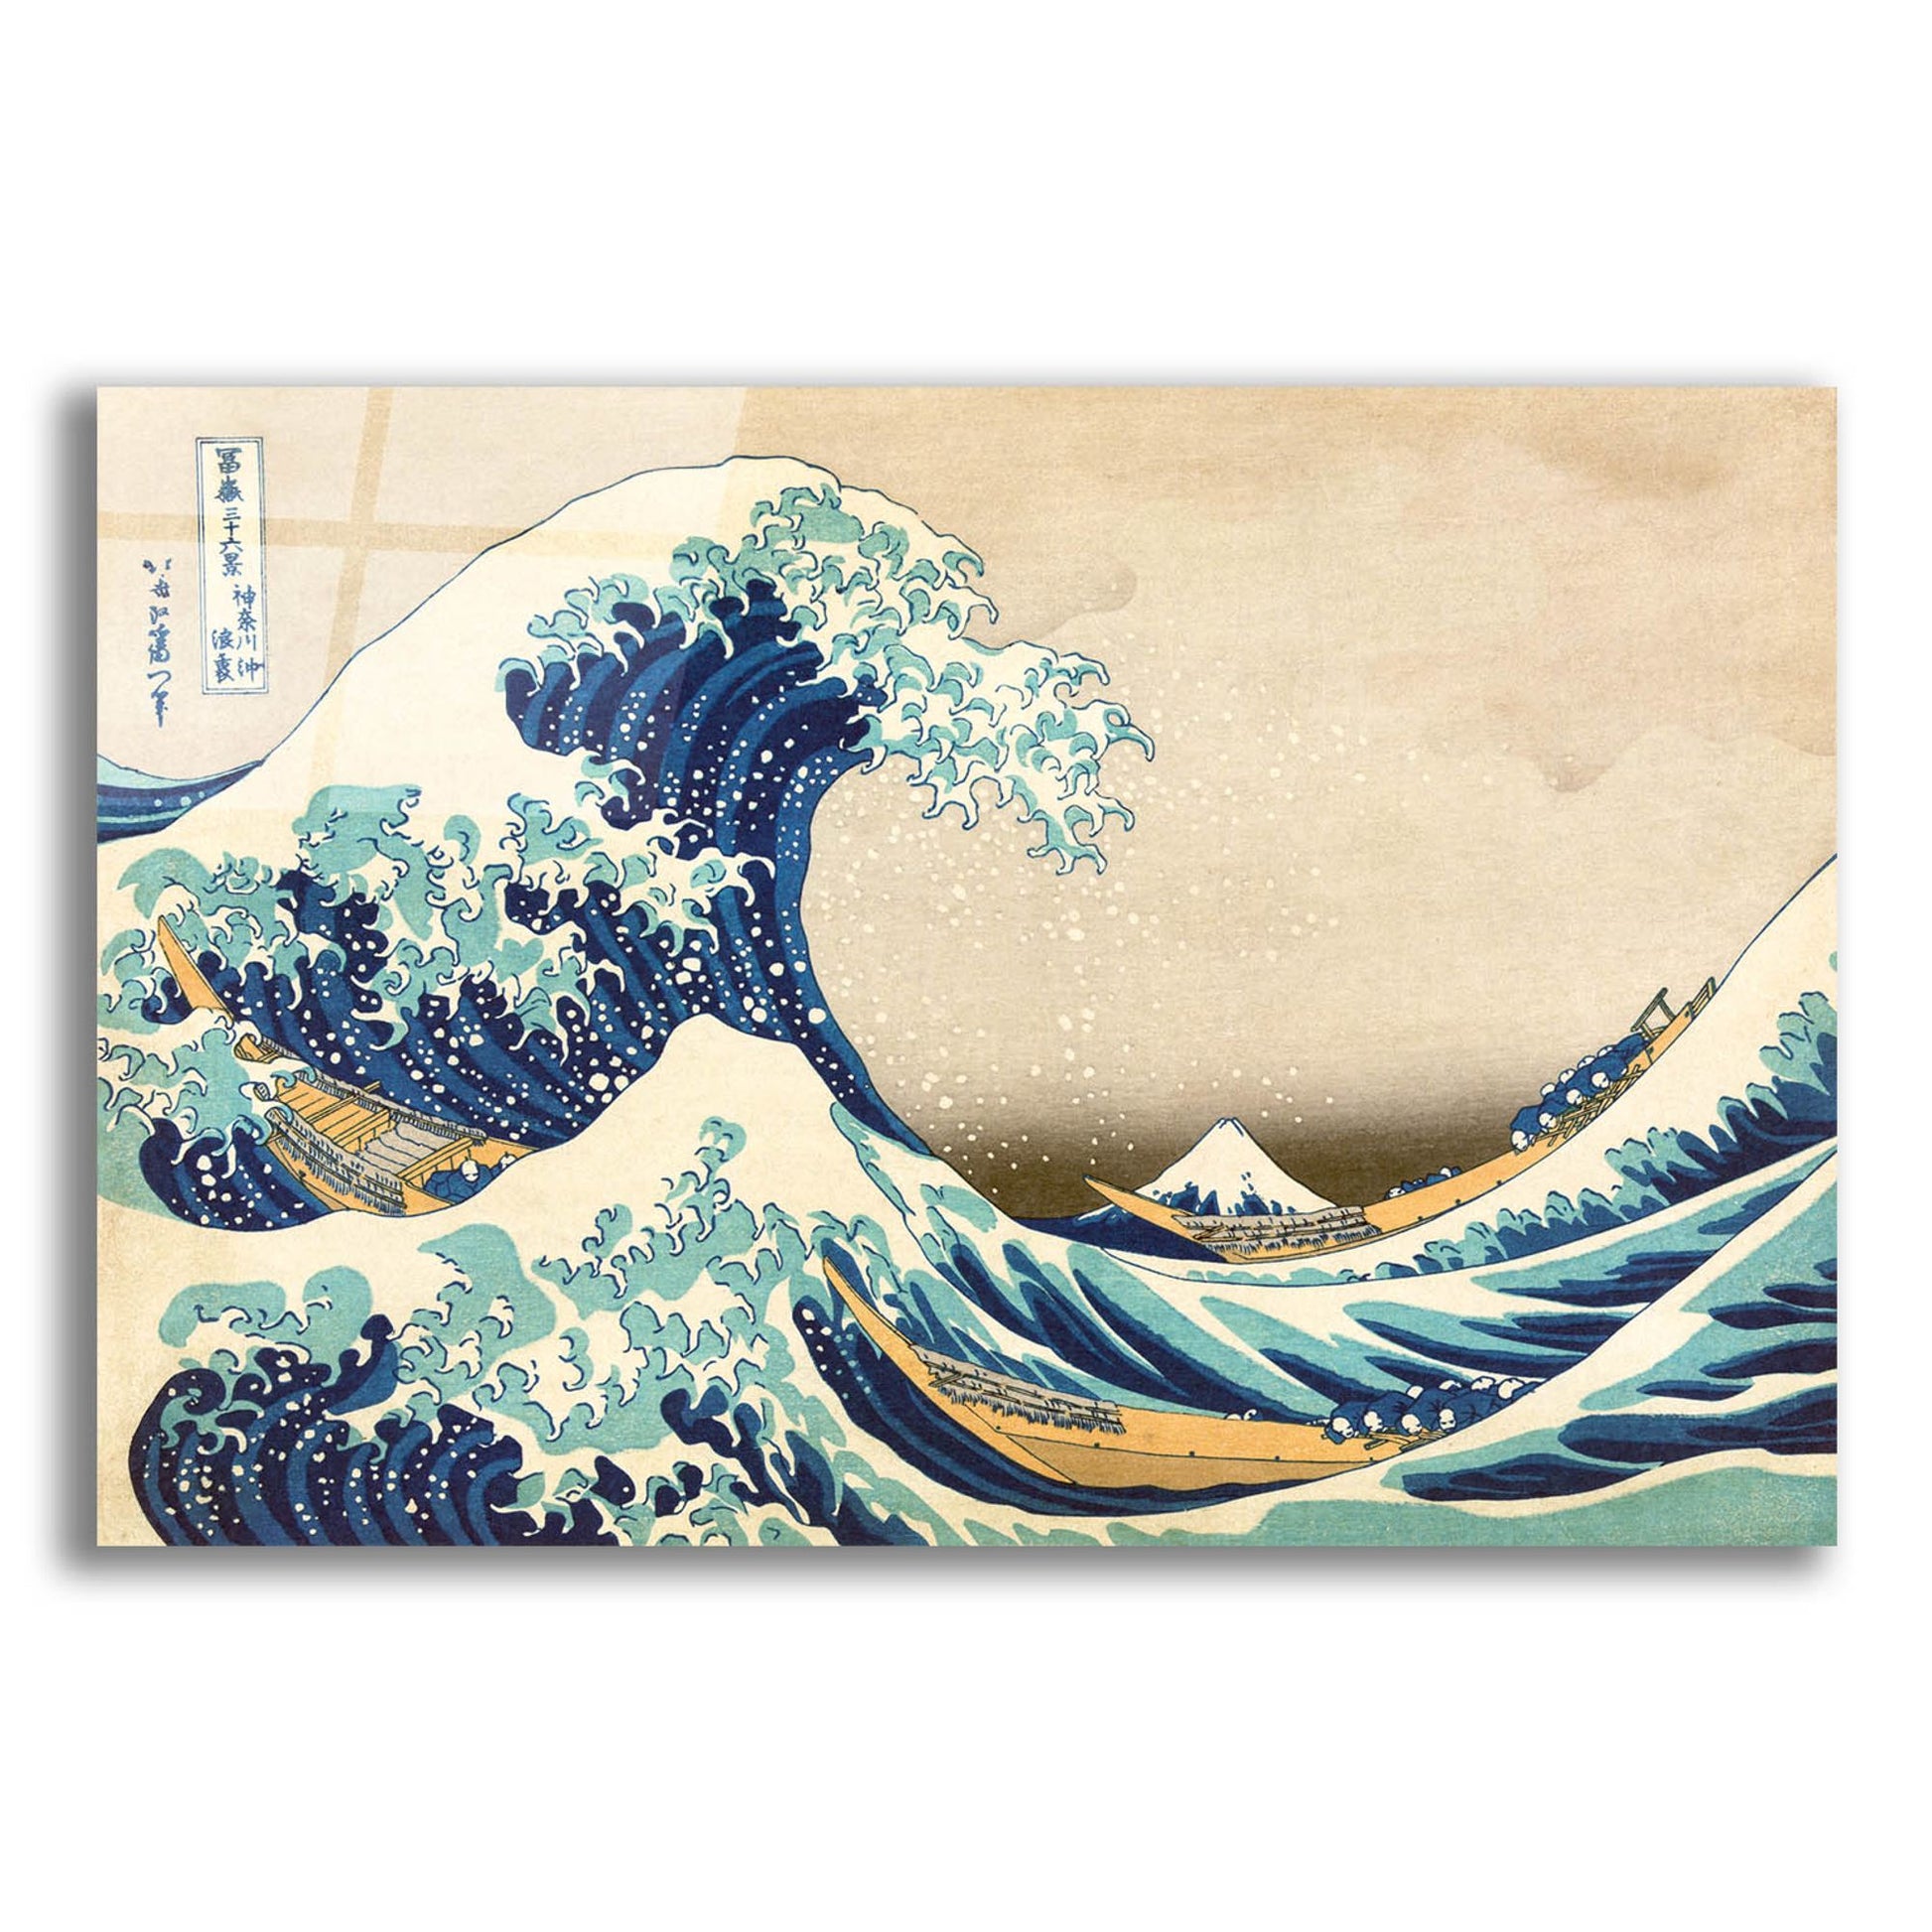 Epic Art 'The Great Wave Off Kanagawa' by Katsushika Hokusai, Acrylic Glass Wall Art,24x16